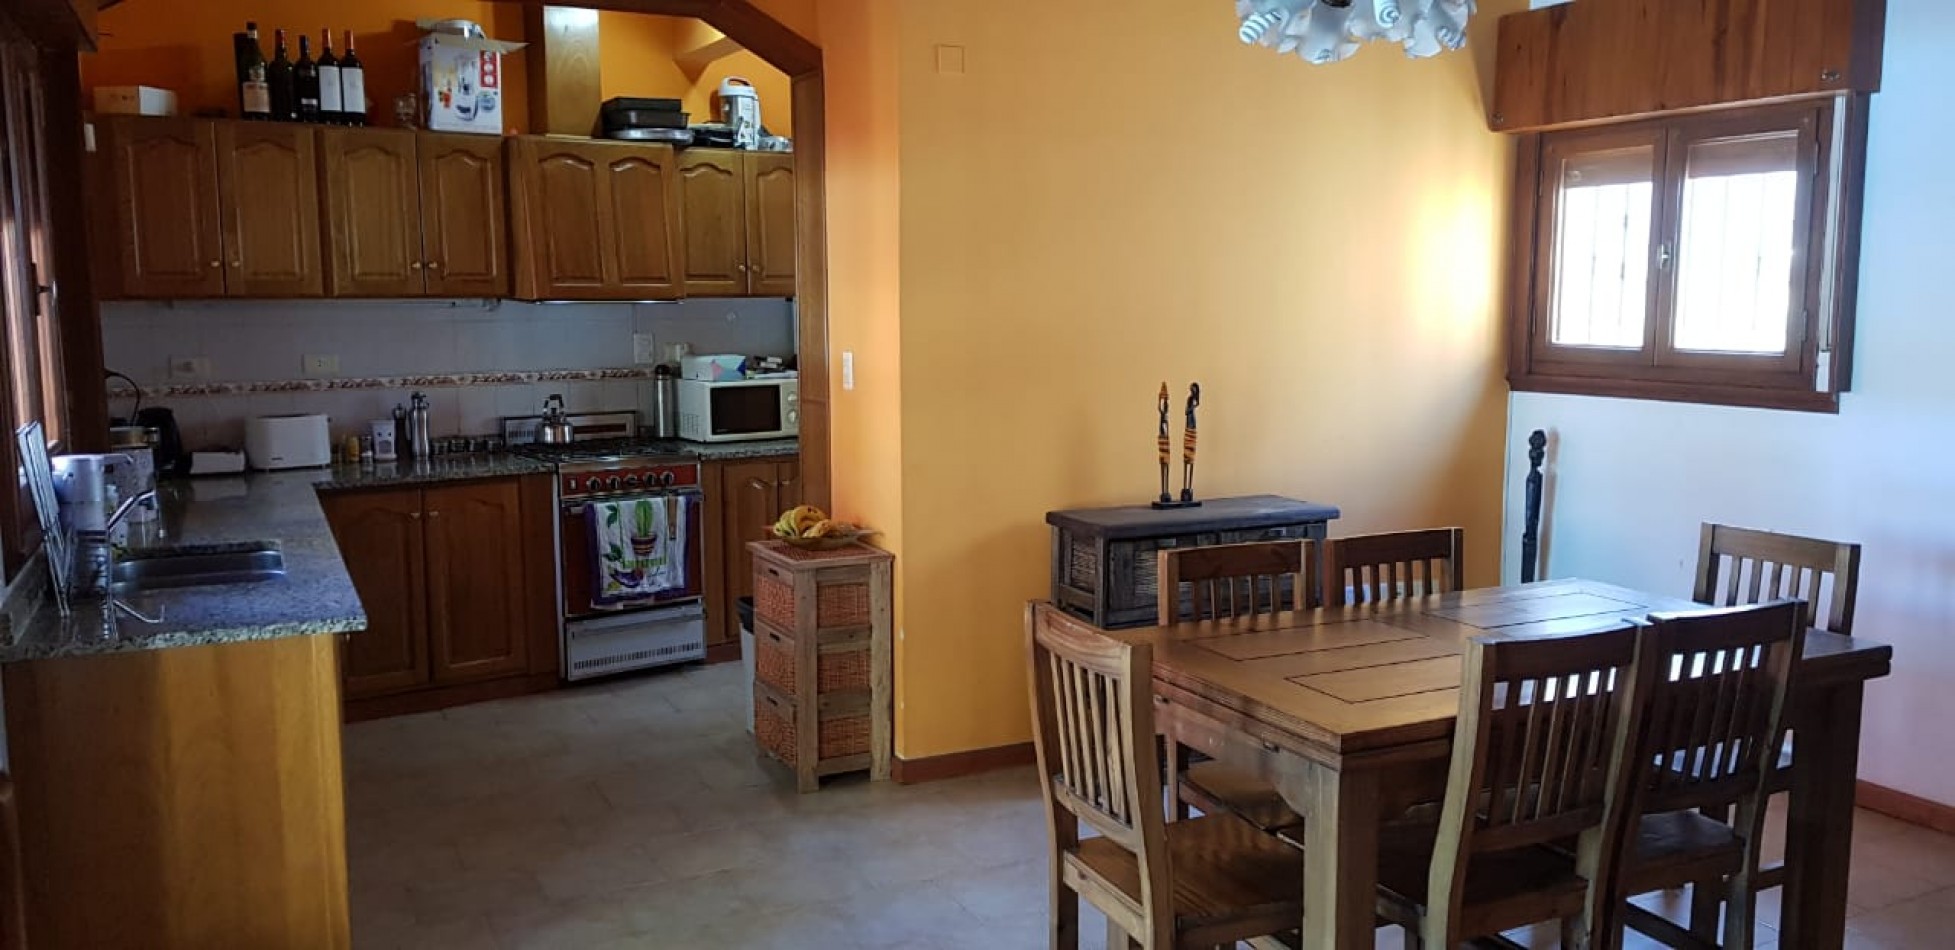 Casa en venta en Barrio Patagonia bahia blanca apta credito hipotecario